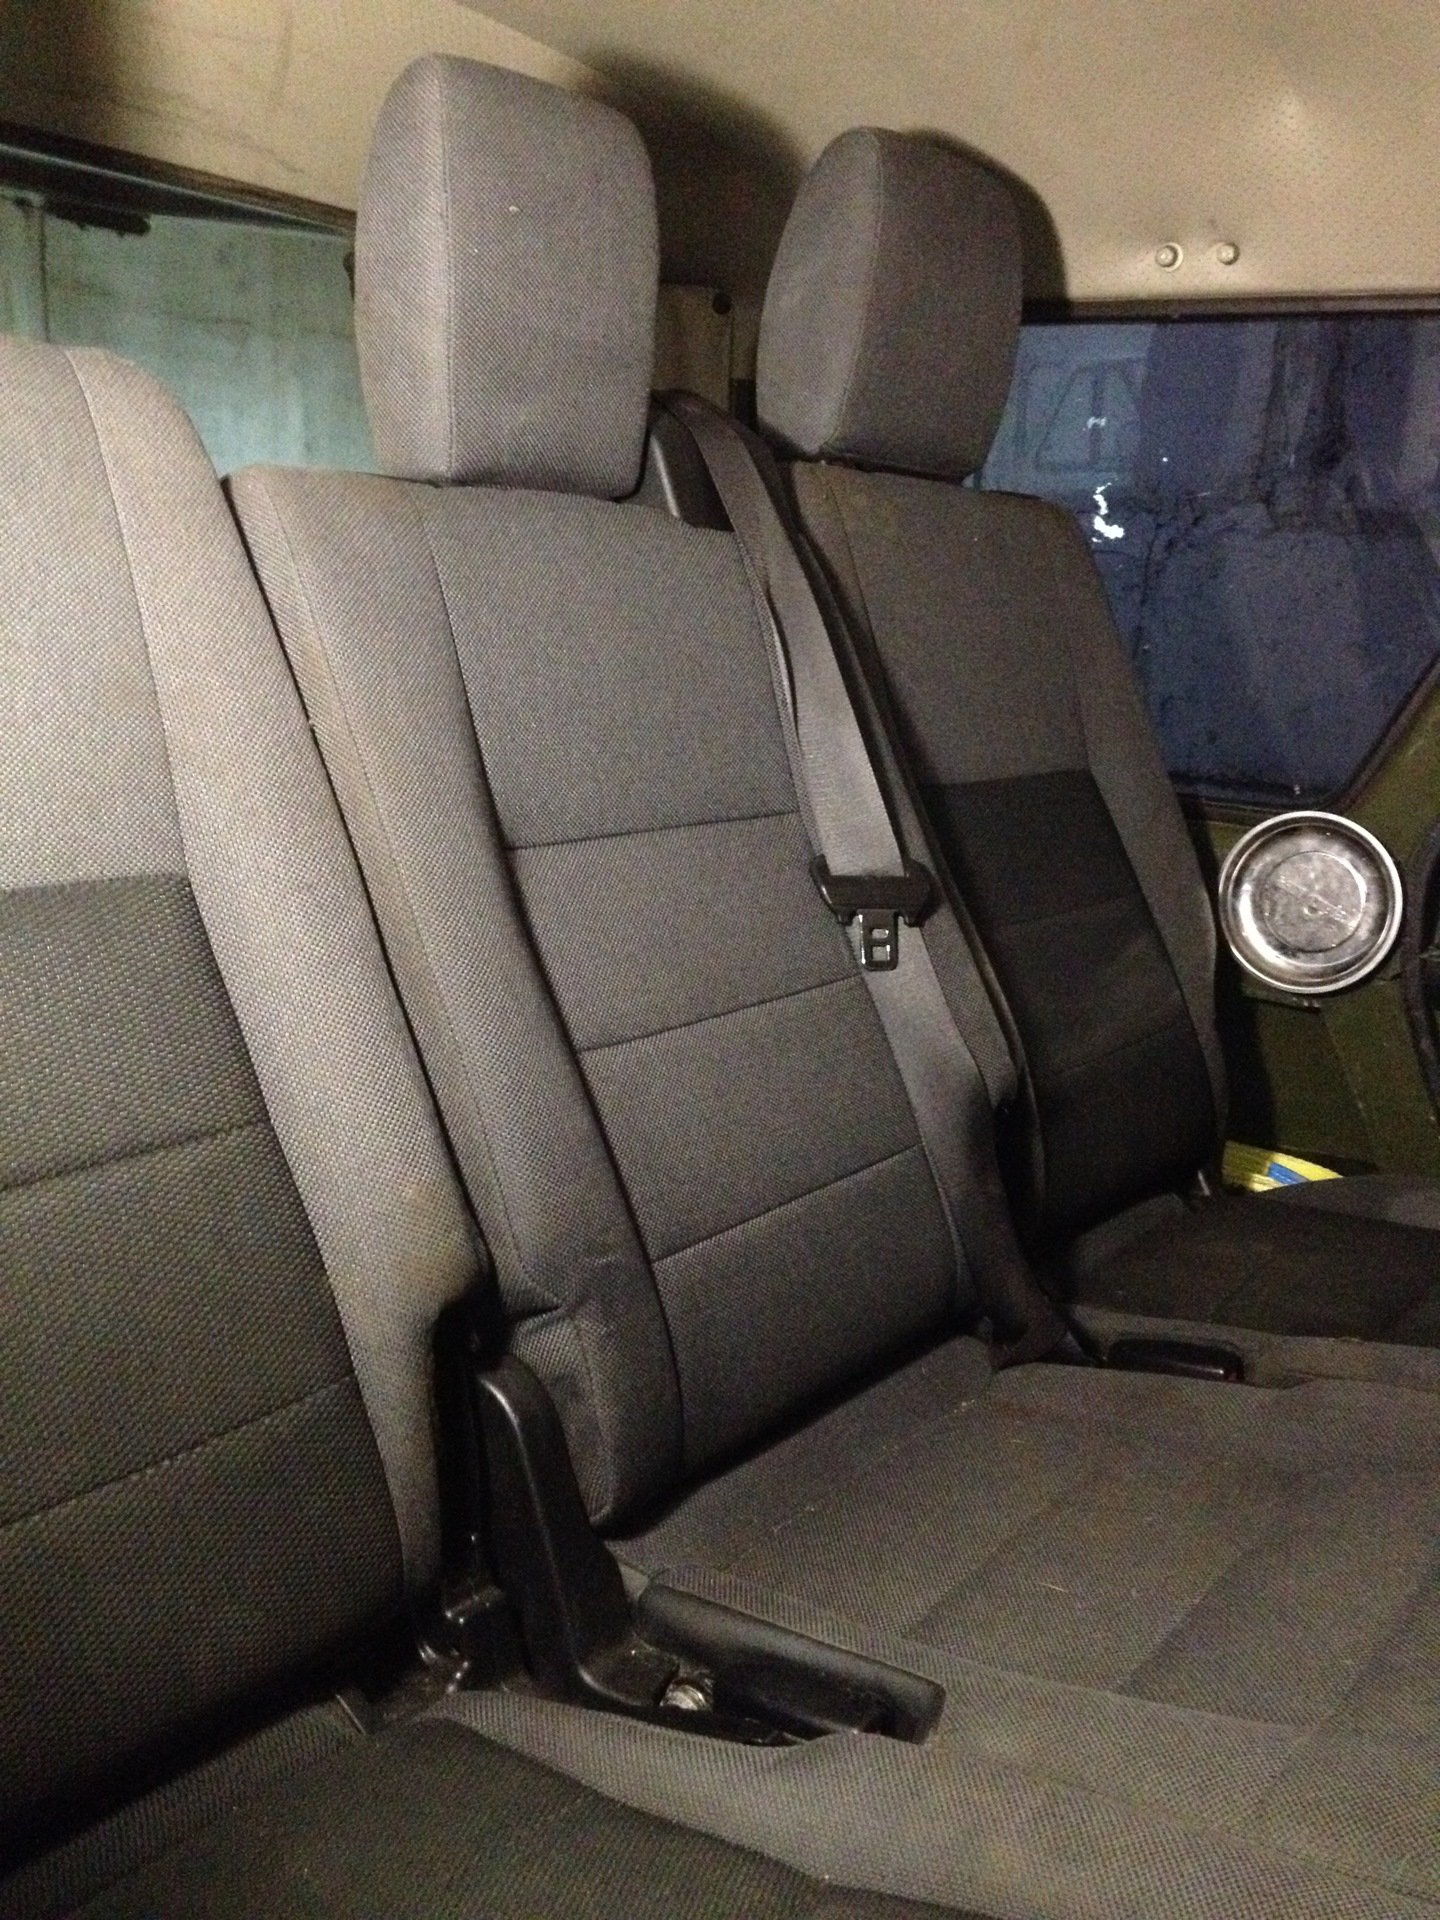 Сиденья дискавери 3. 2 Ряд сидений ленд Ровер Дискавери 3. Land Rover Discovery 3 ряд сидений. Сиденья Лэнд Ровер Дискавери 3. Land Rover Discovery 3 задние сидения.